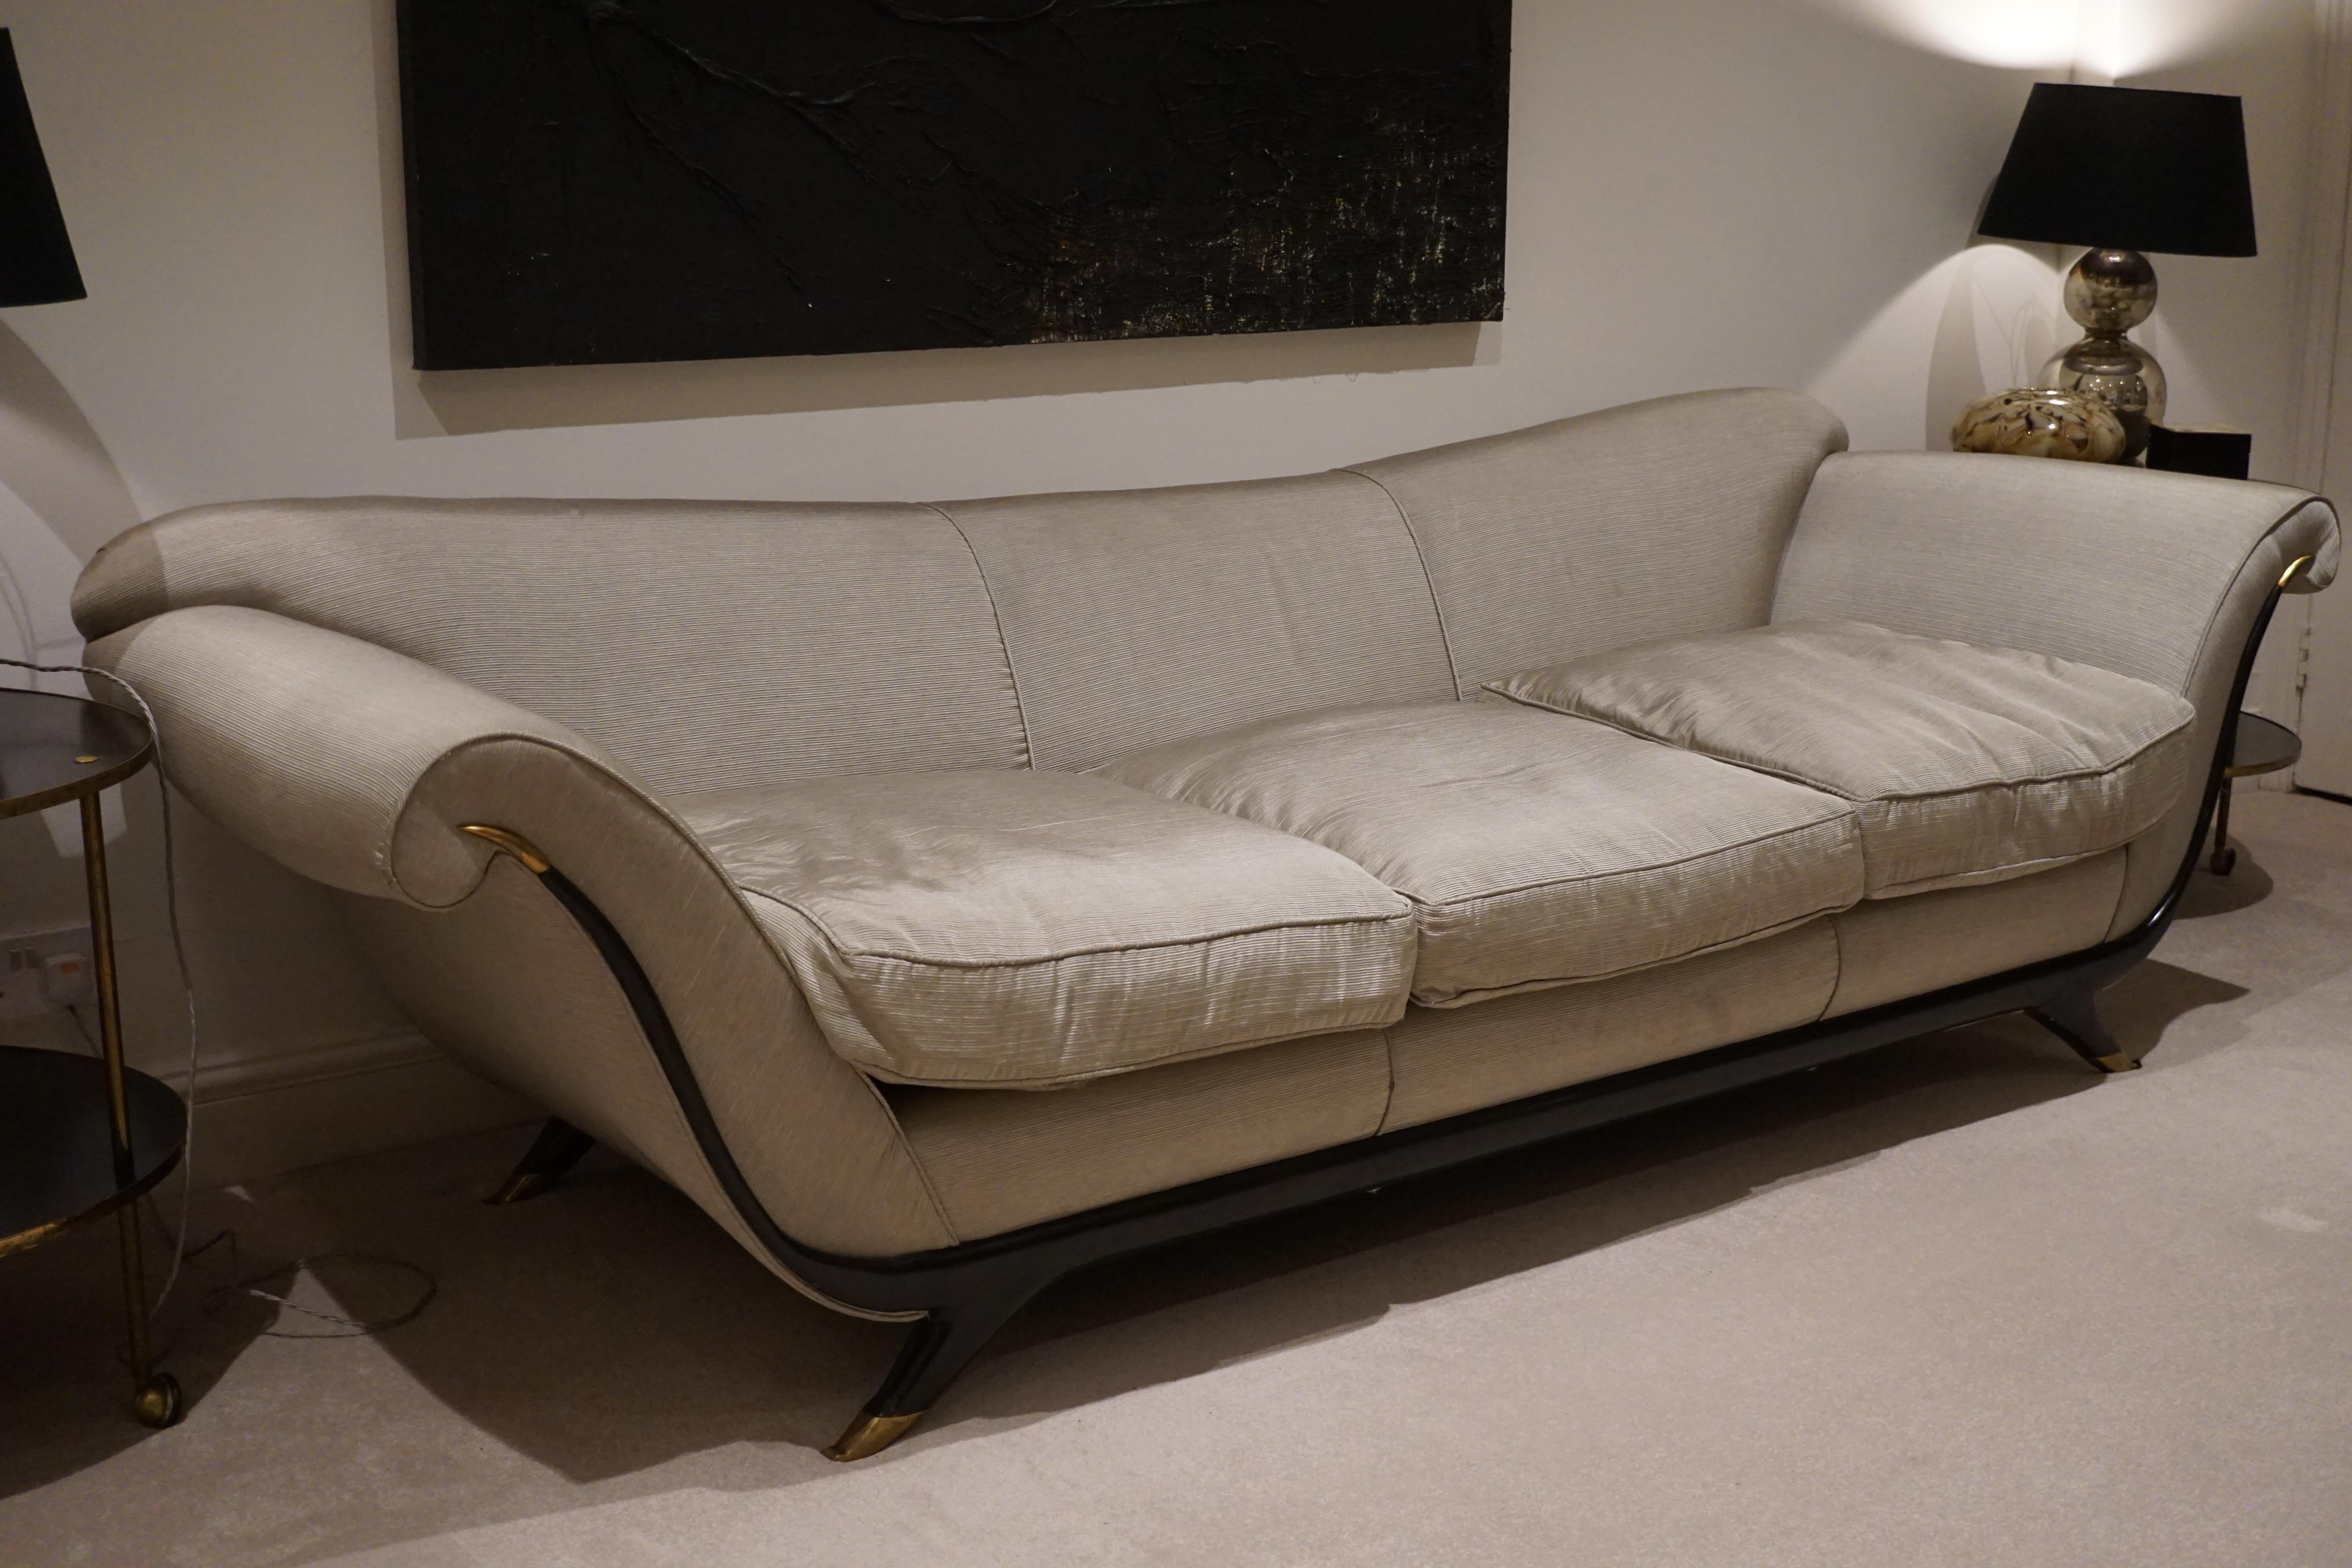 Dies ist eines der herausragendsten Sofadesigns von Ulrichs.
Dieses besondere Sofa gehörte zu Joseph Ettedguis persönlicher Sammlung von Möbeln aus der Mitte des zwanzigsten Jahrhunderts, die 2007 auf der Antiquitätenmesse in London ausgestellt